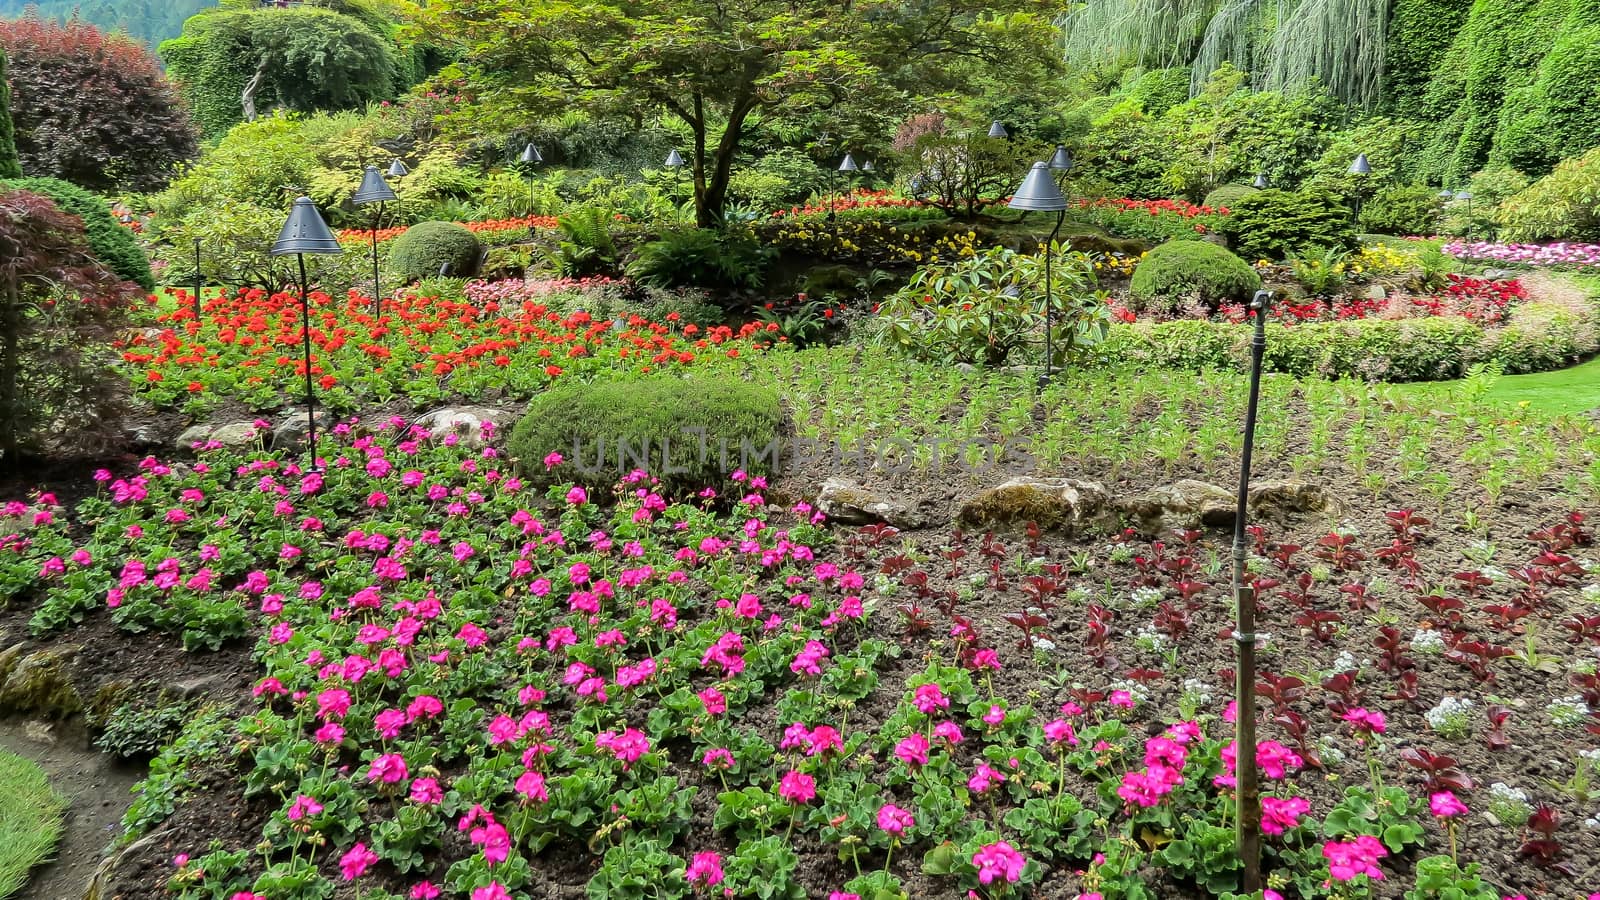 Flower garden in the Pacific Northwest.